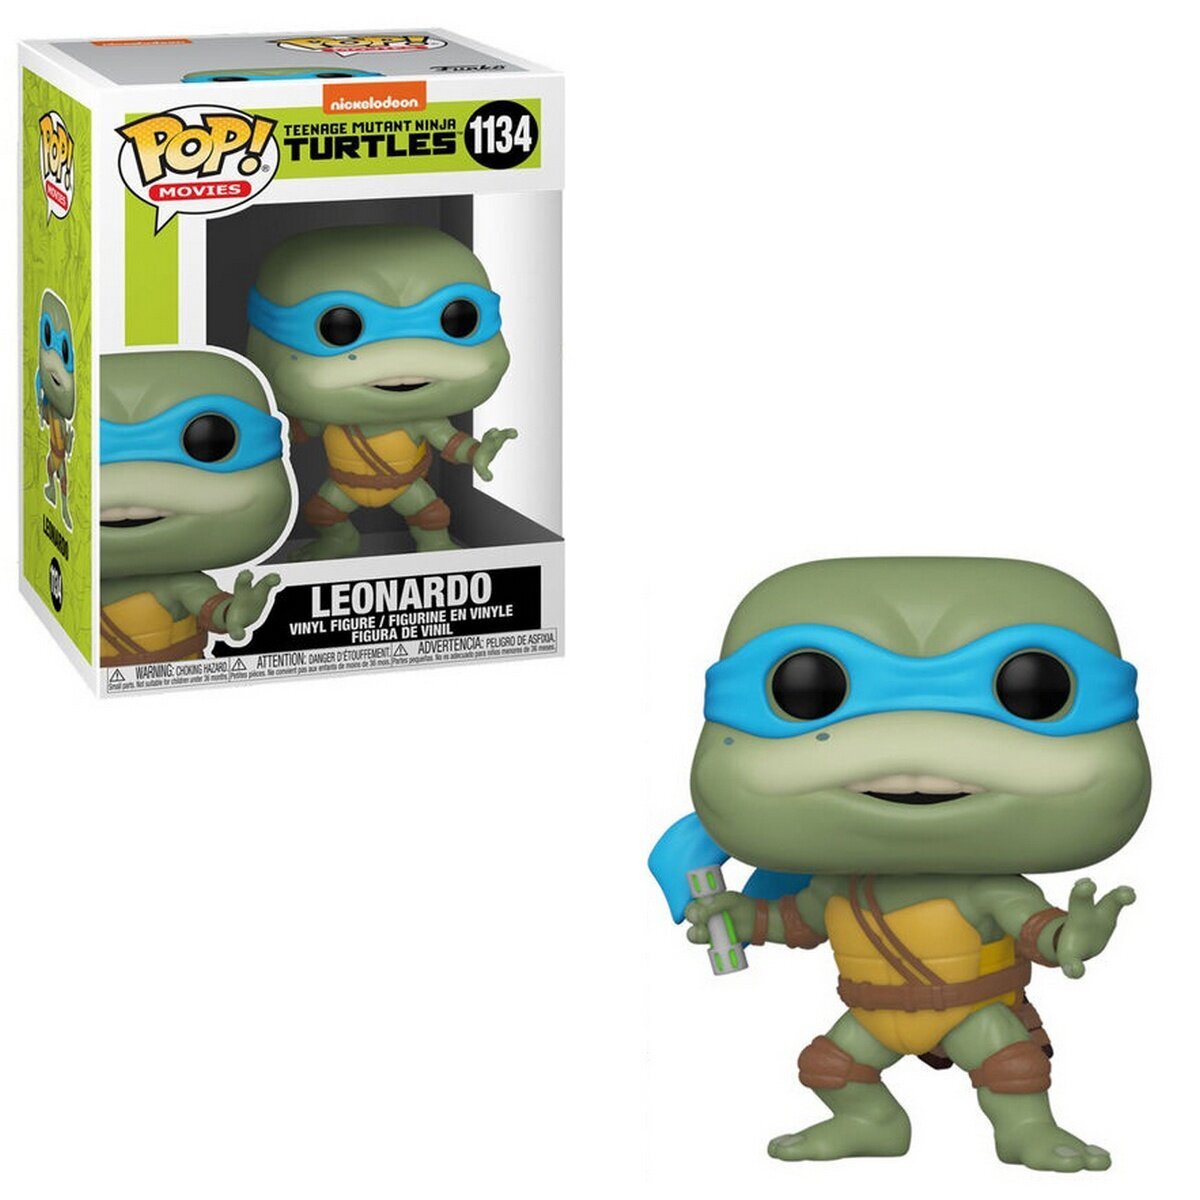 Figuurit POP! Movies: Teenage Mutant Ninja Turtles II - Leonardo Vinyl  Figure hinta 